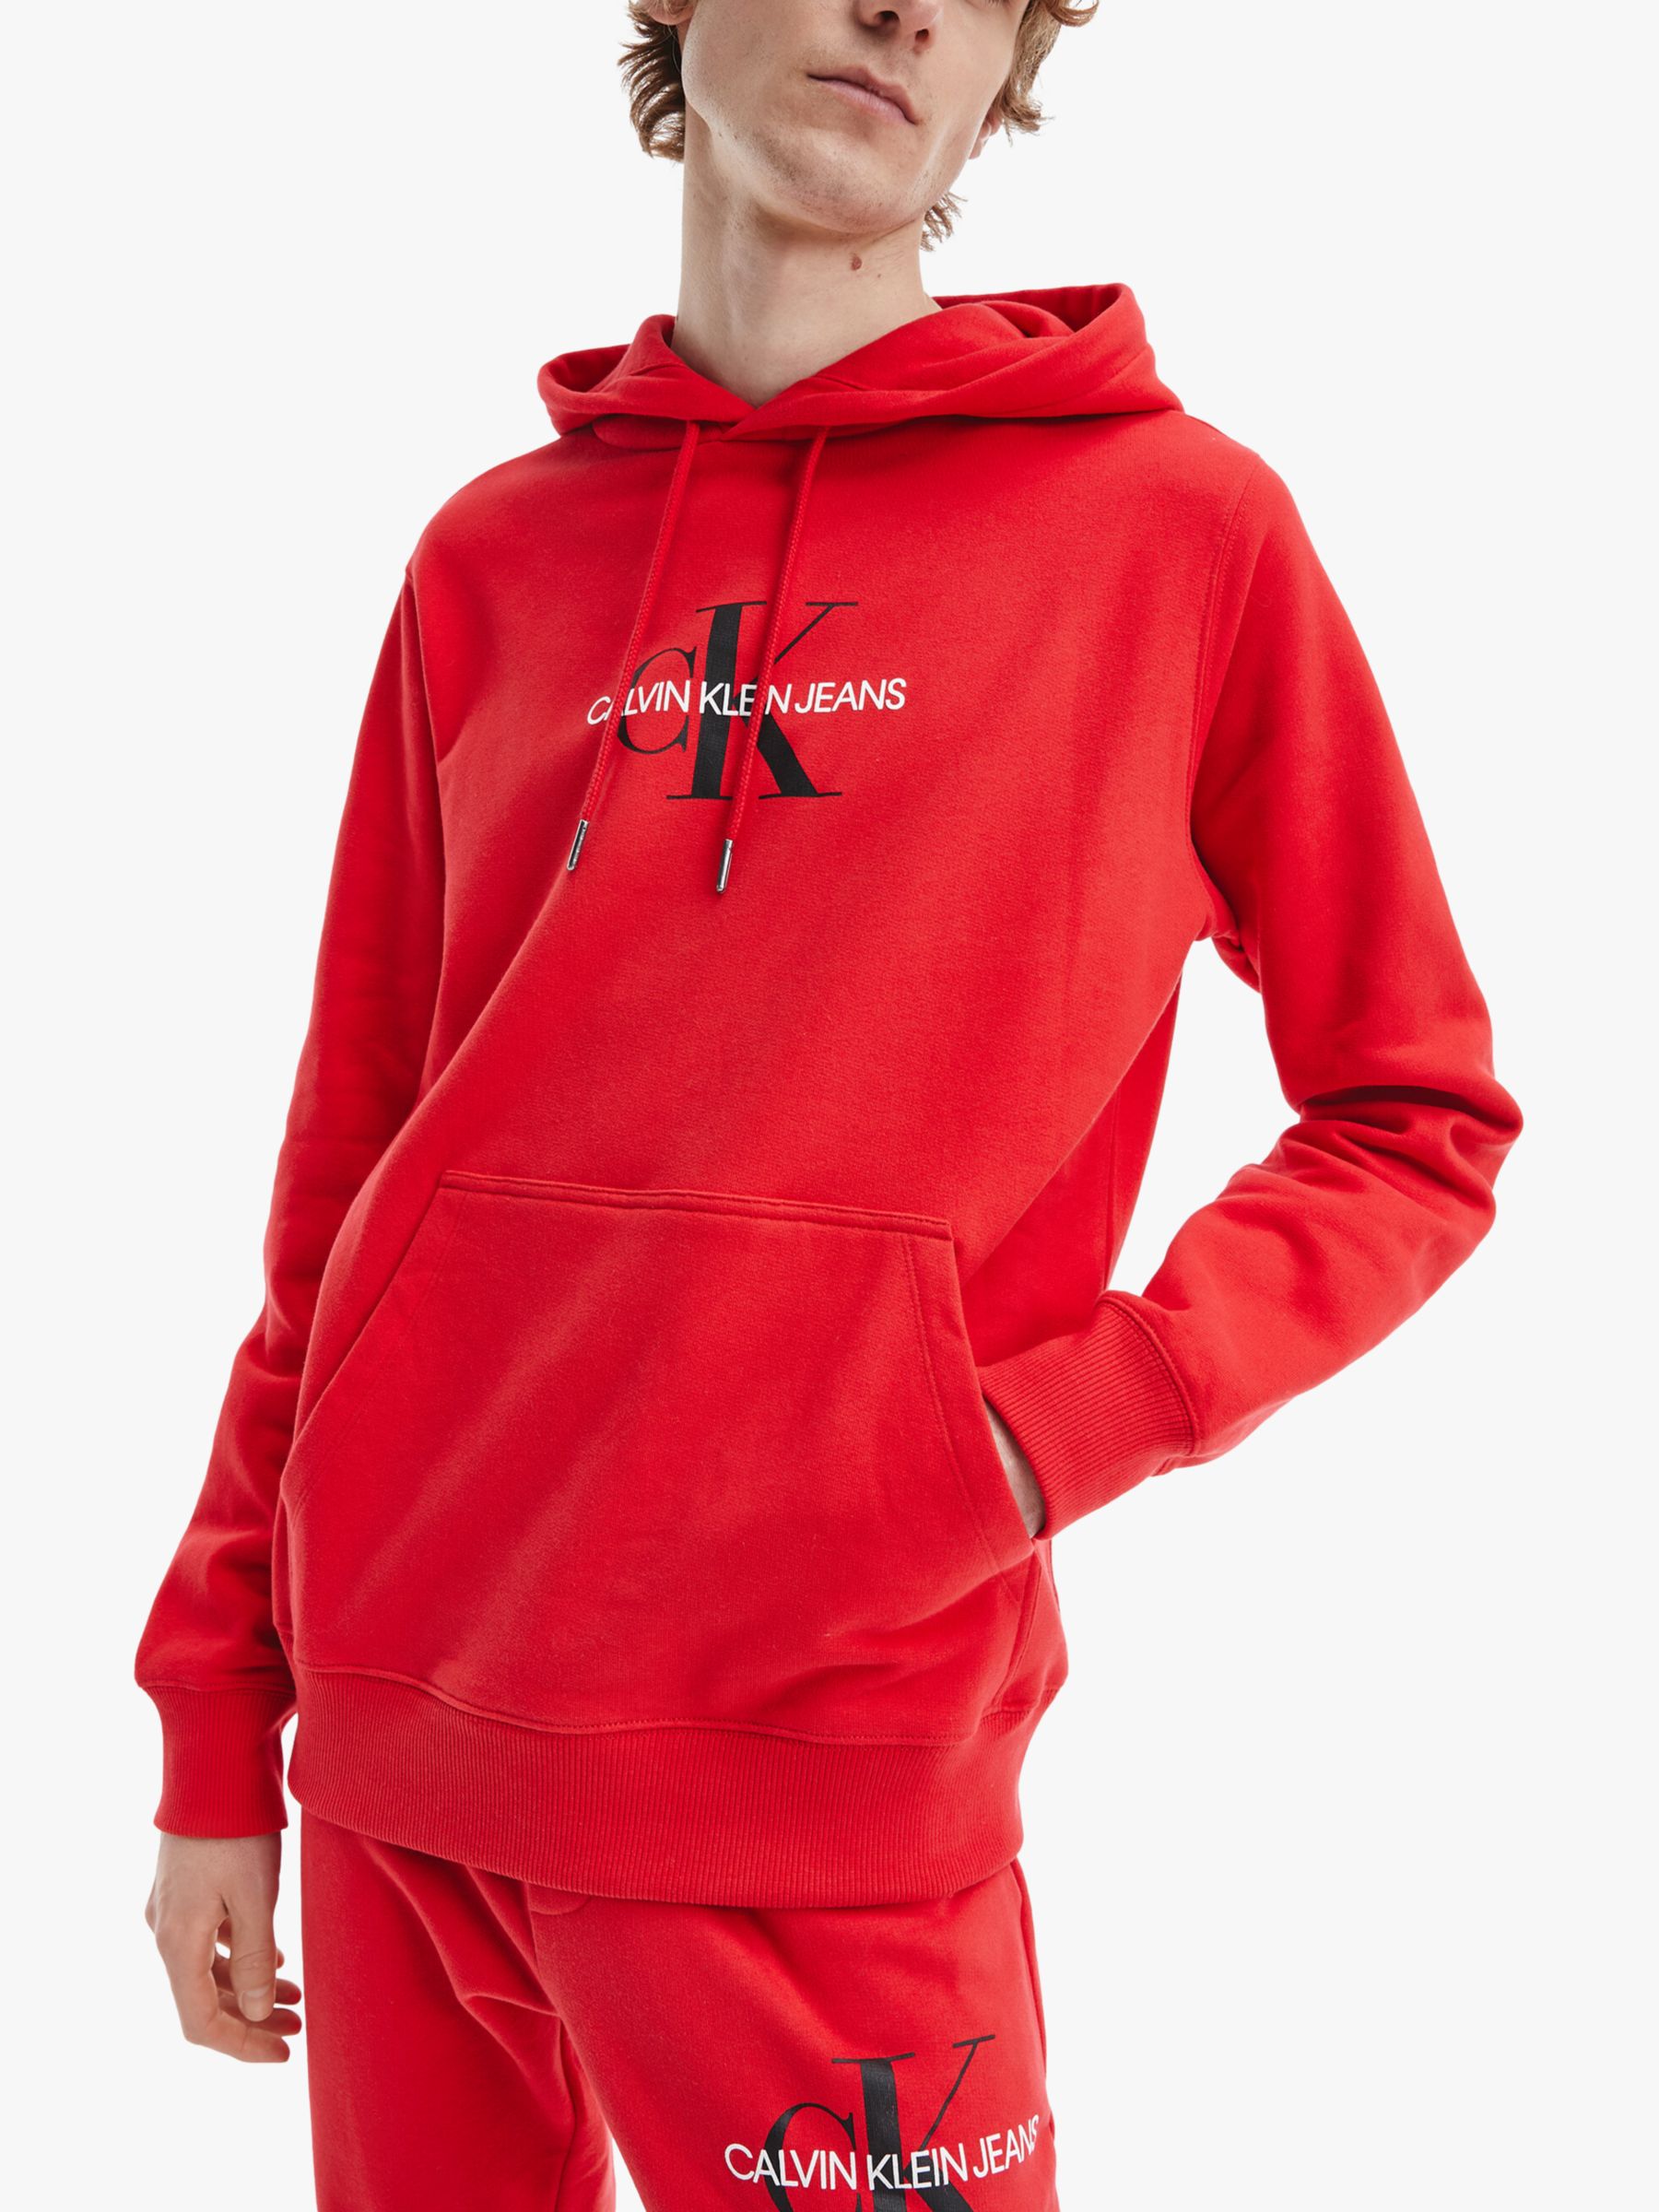 Calvin Klein Red Hoodie Top Sellers, SAVE 54%.